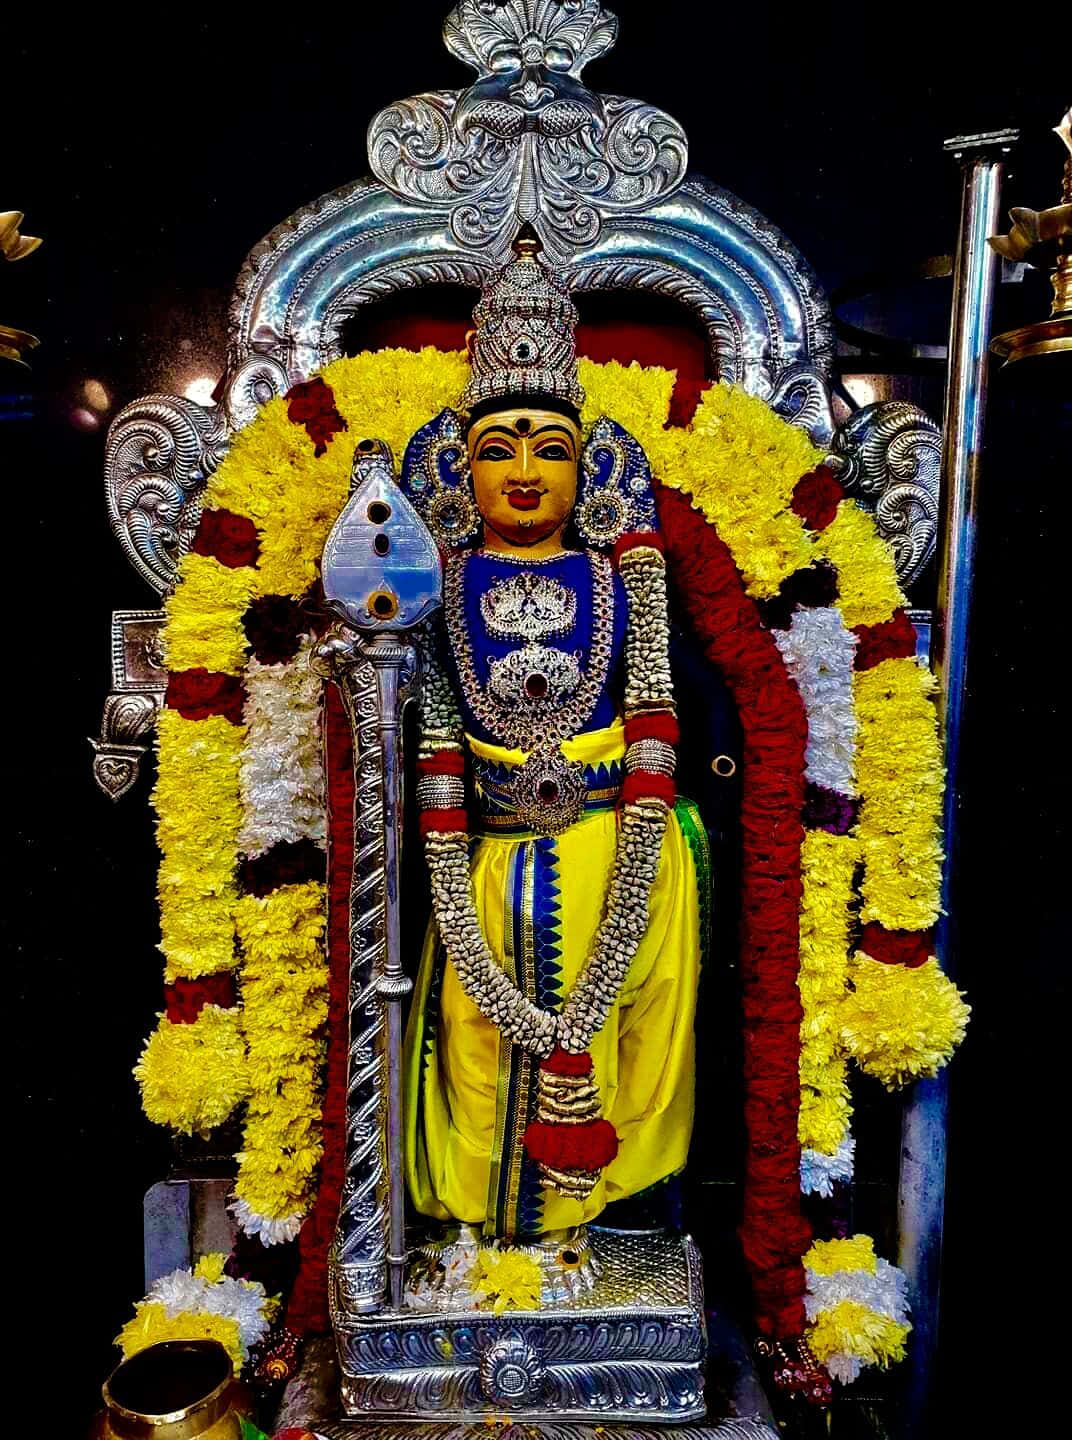 A devotee worships Lord Murugan